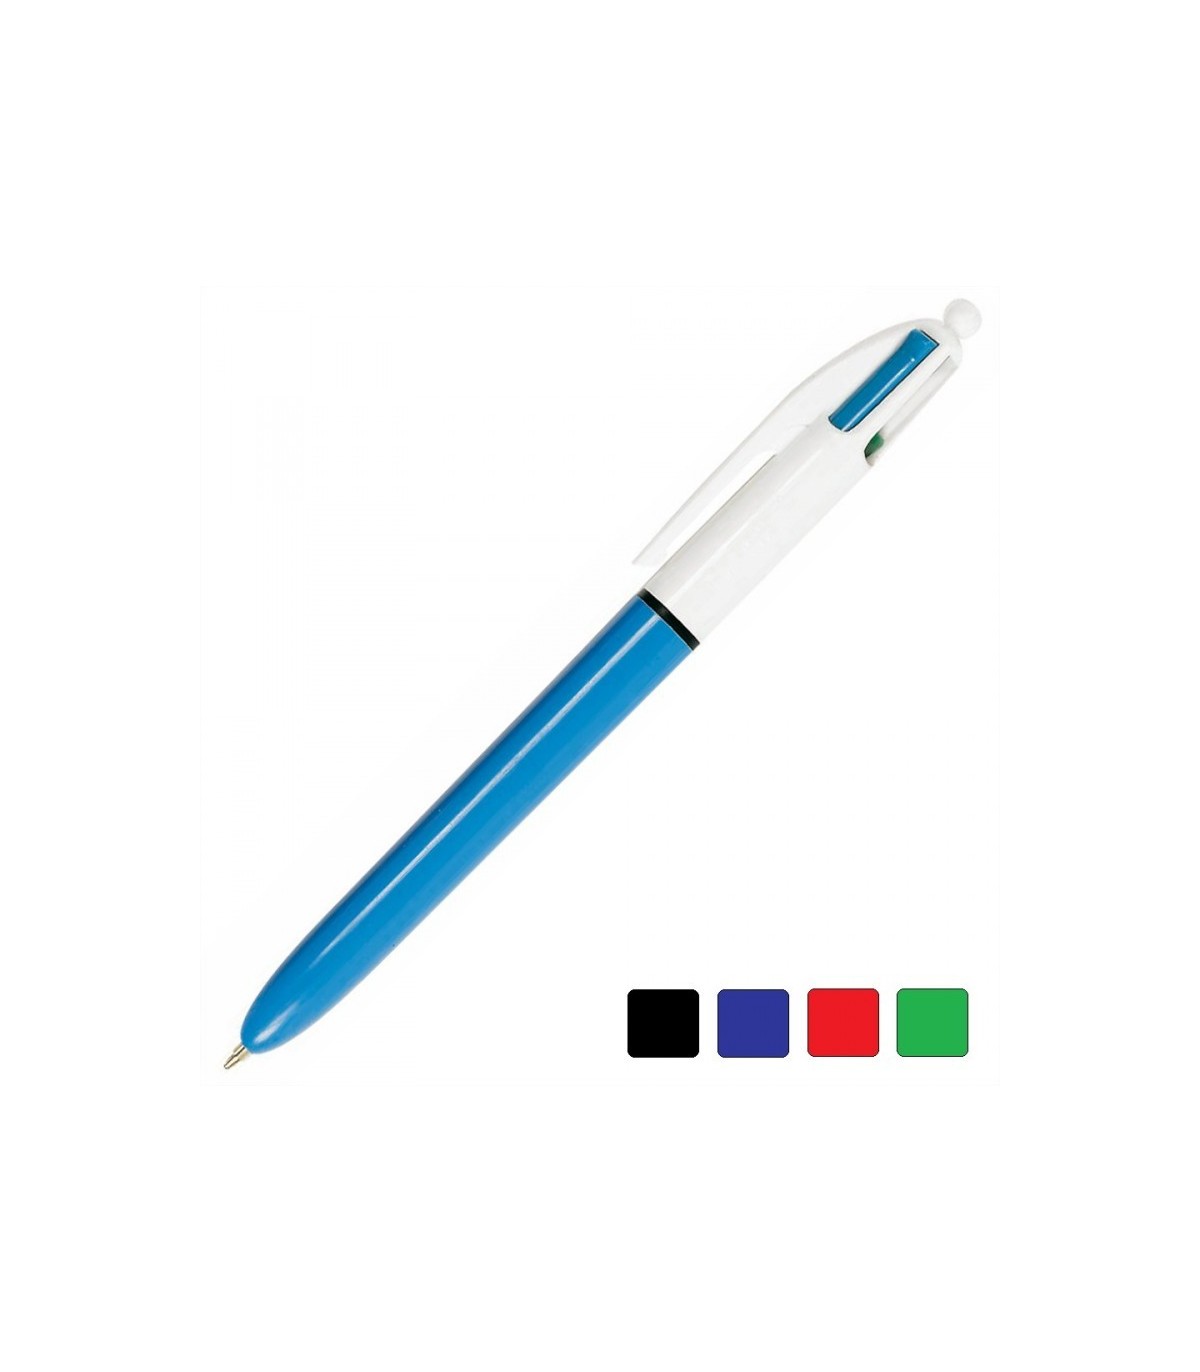 BIC-962430 - Penna a sfera Bic 4 VELVET - blu, nero, rosso e verde - Tratto  0,4 mm - Fusto con esclusivo effetto velluto e design a tema giungla. - Bic  (Cancelleria-Penne